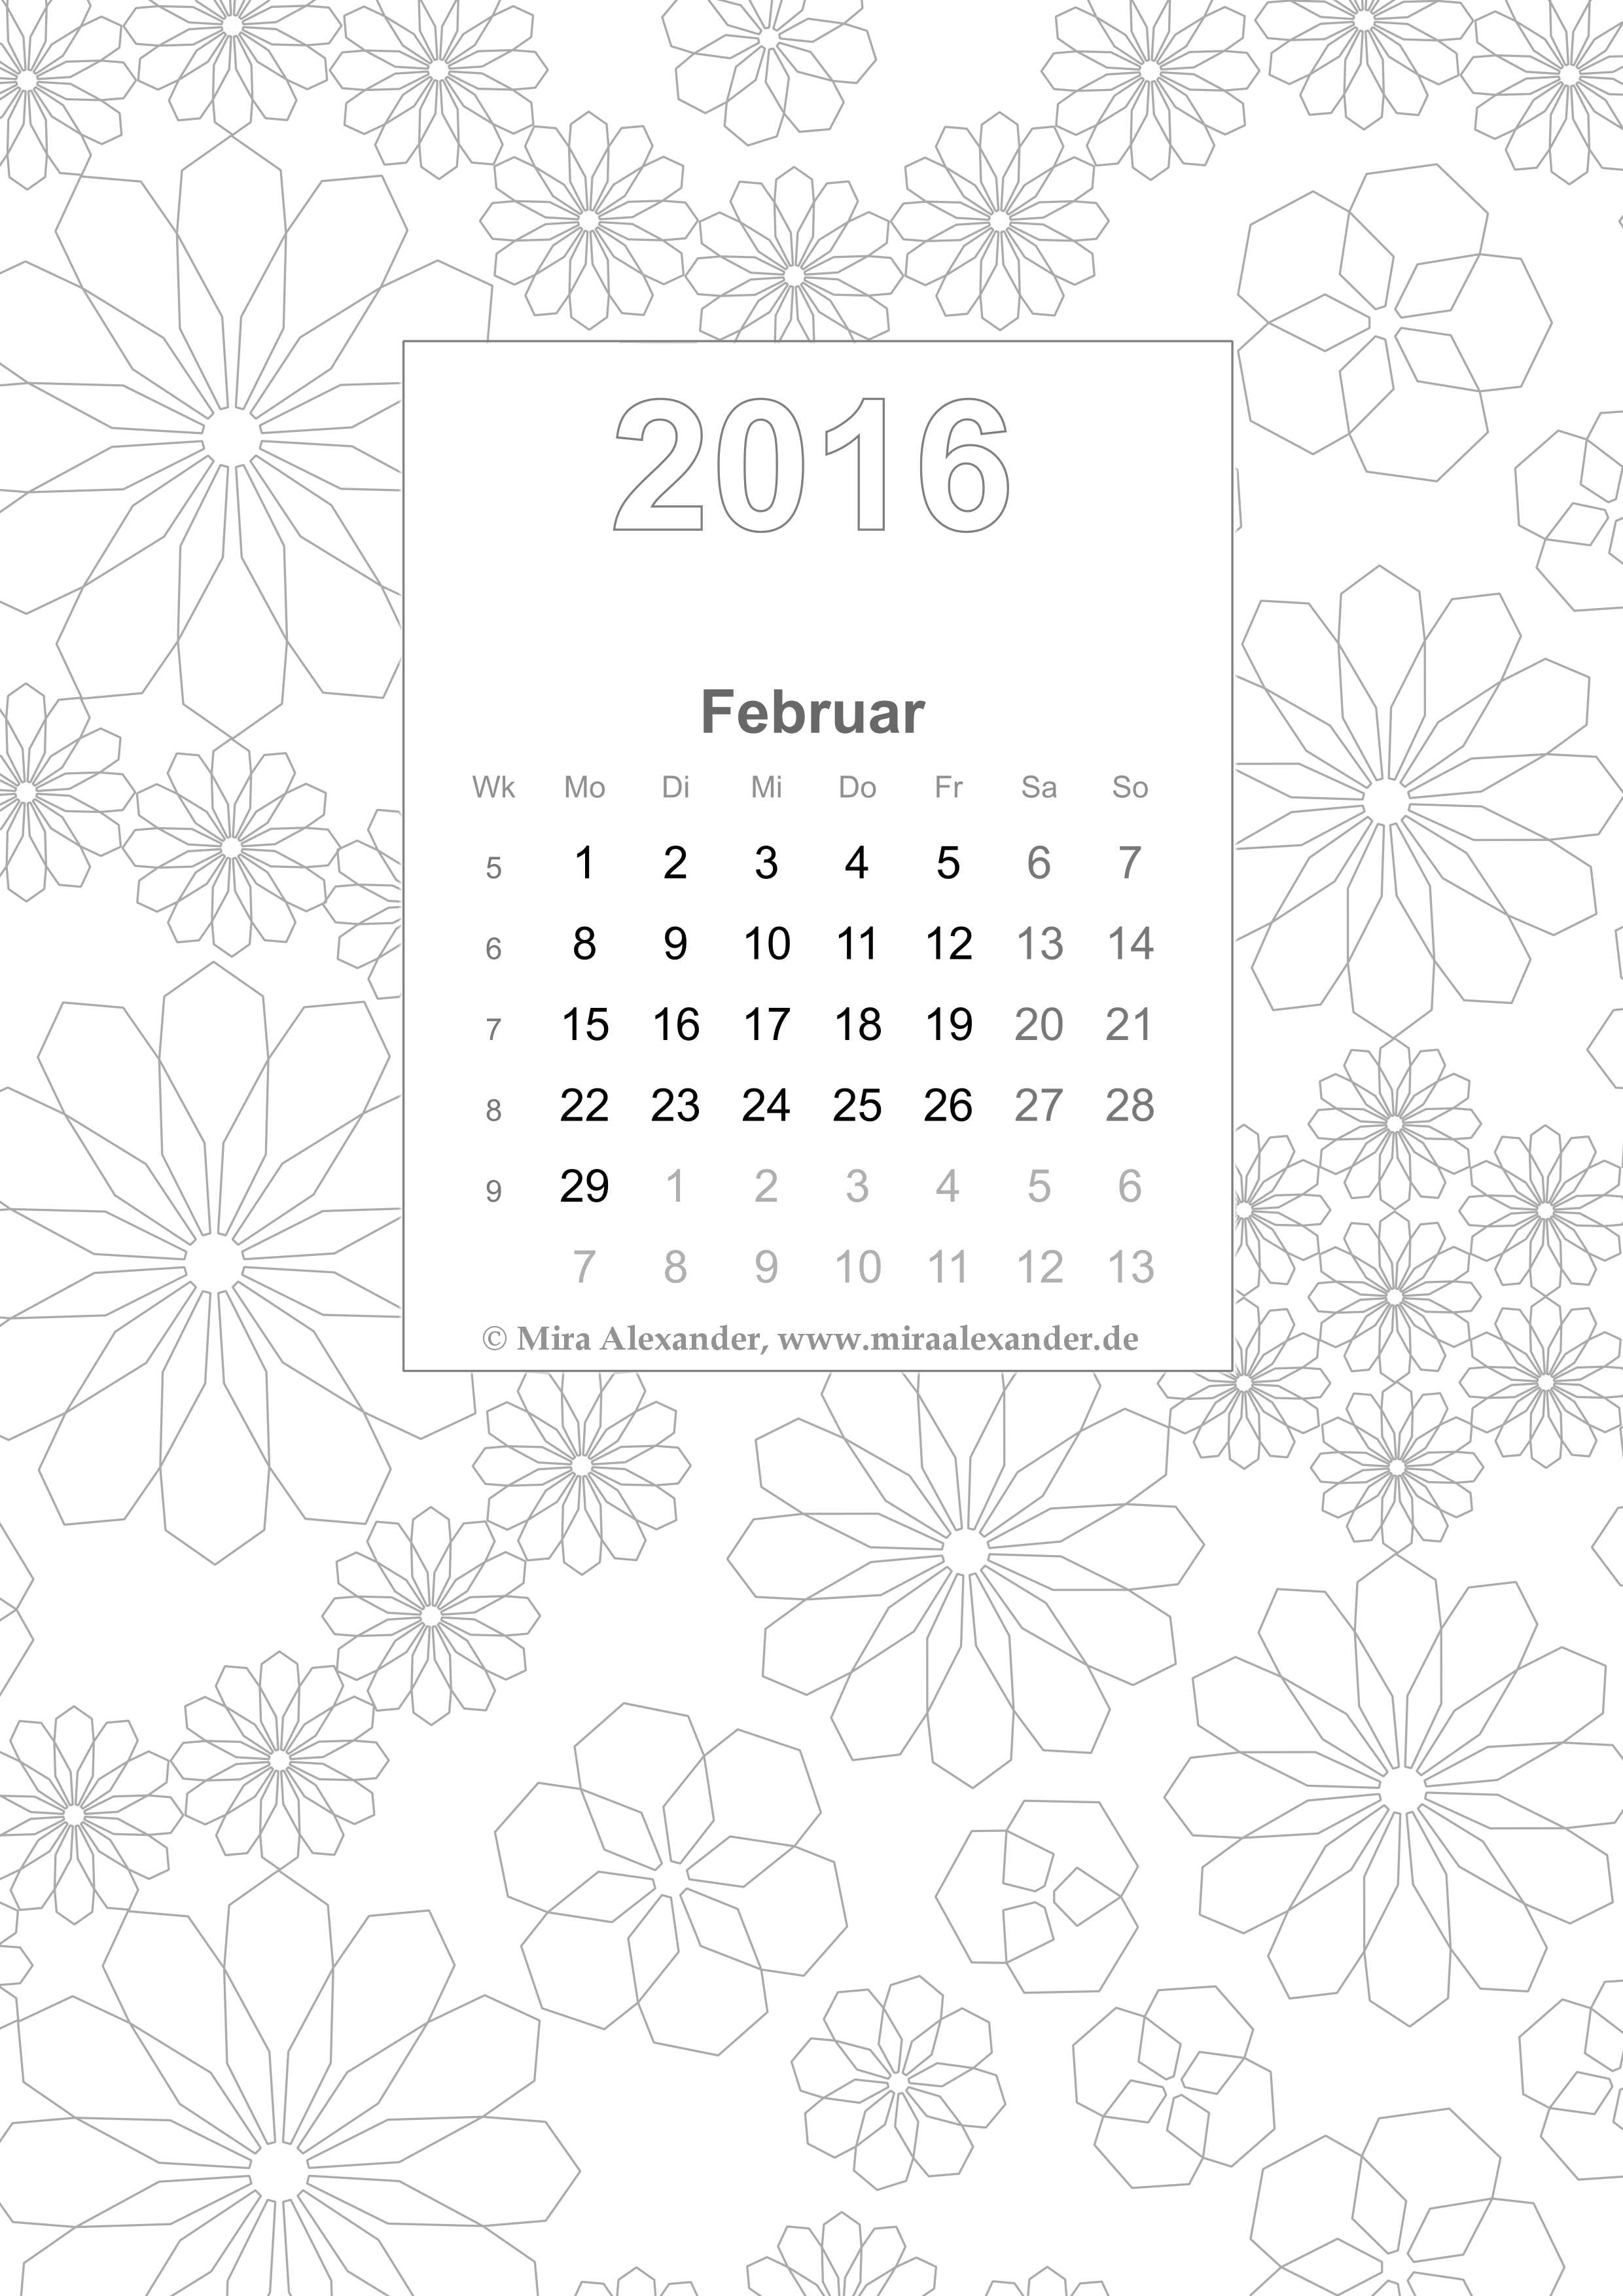 Coloring Book Calendar 2016/02 (private use only / nur für privaten Gebrauch); © Mira Alexander; right-click and safe for download / Rechtsklick und Speichern zum Herunterladen